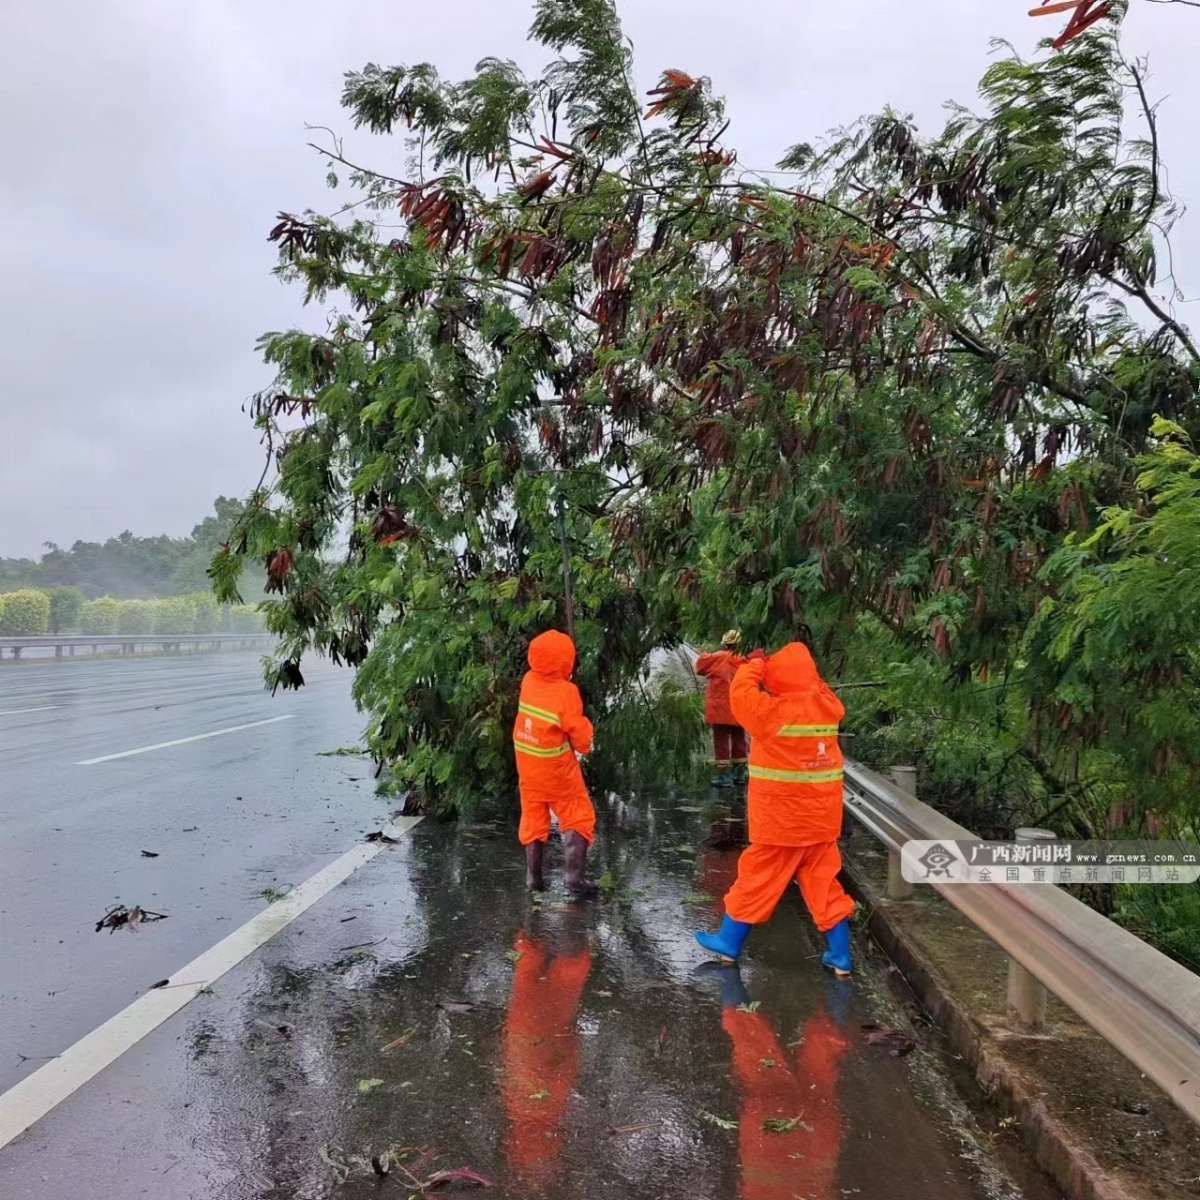 北投养护科技集团组织公路抢险队伍在暴风雨中对倒伏路树和占道土方进行清理。